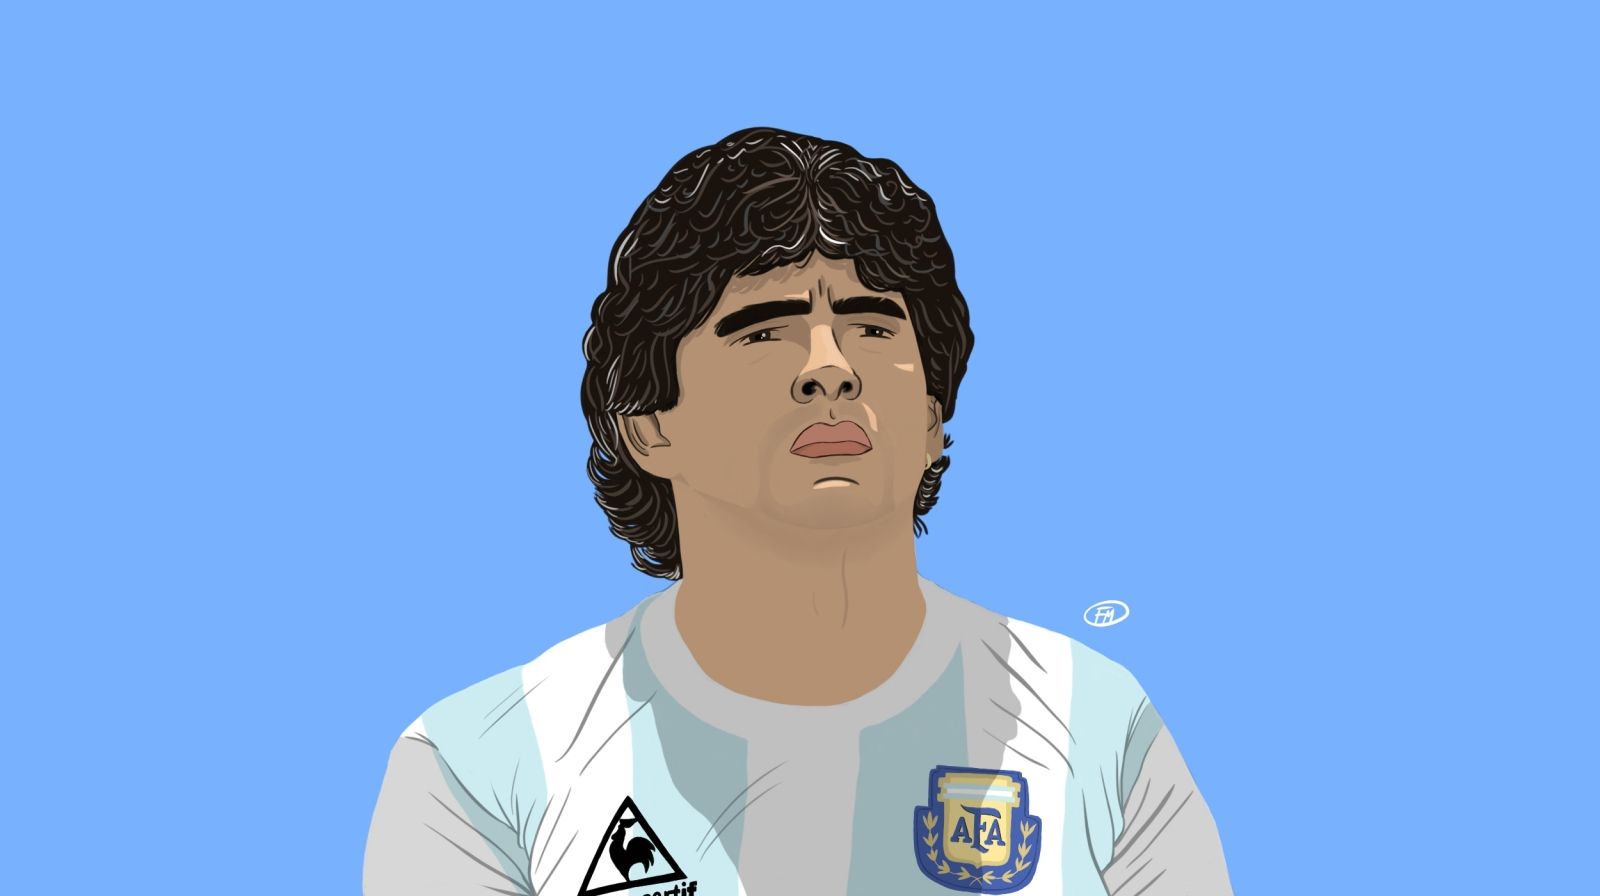 Maradona Logo - Diego Maradona: the dream we all want to be